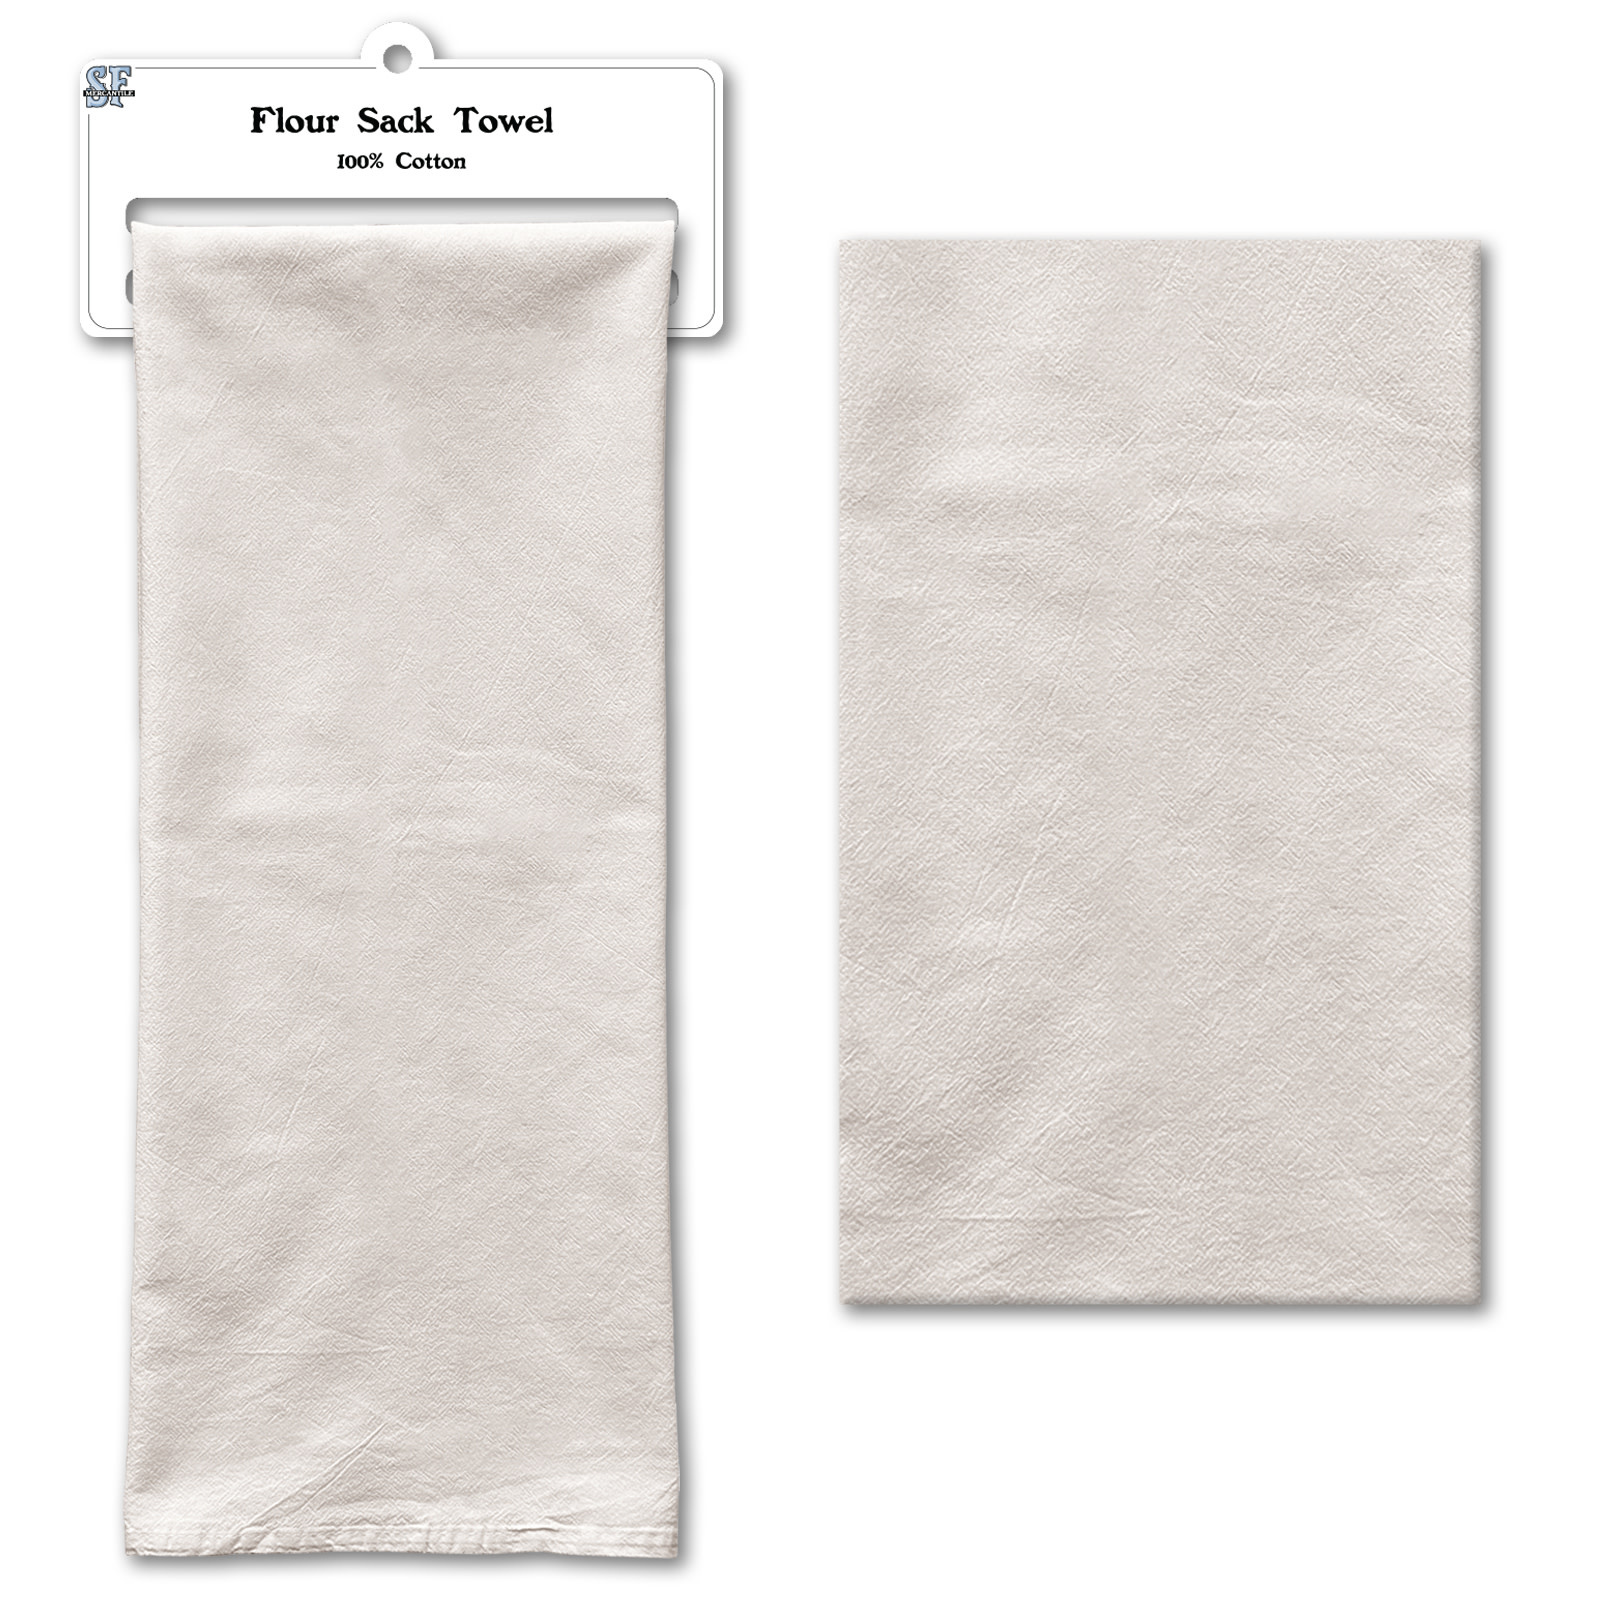 Customizable Flour Sack Towel